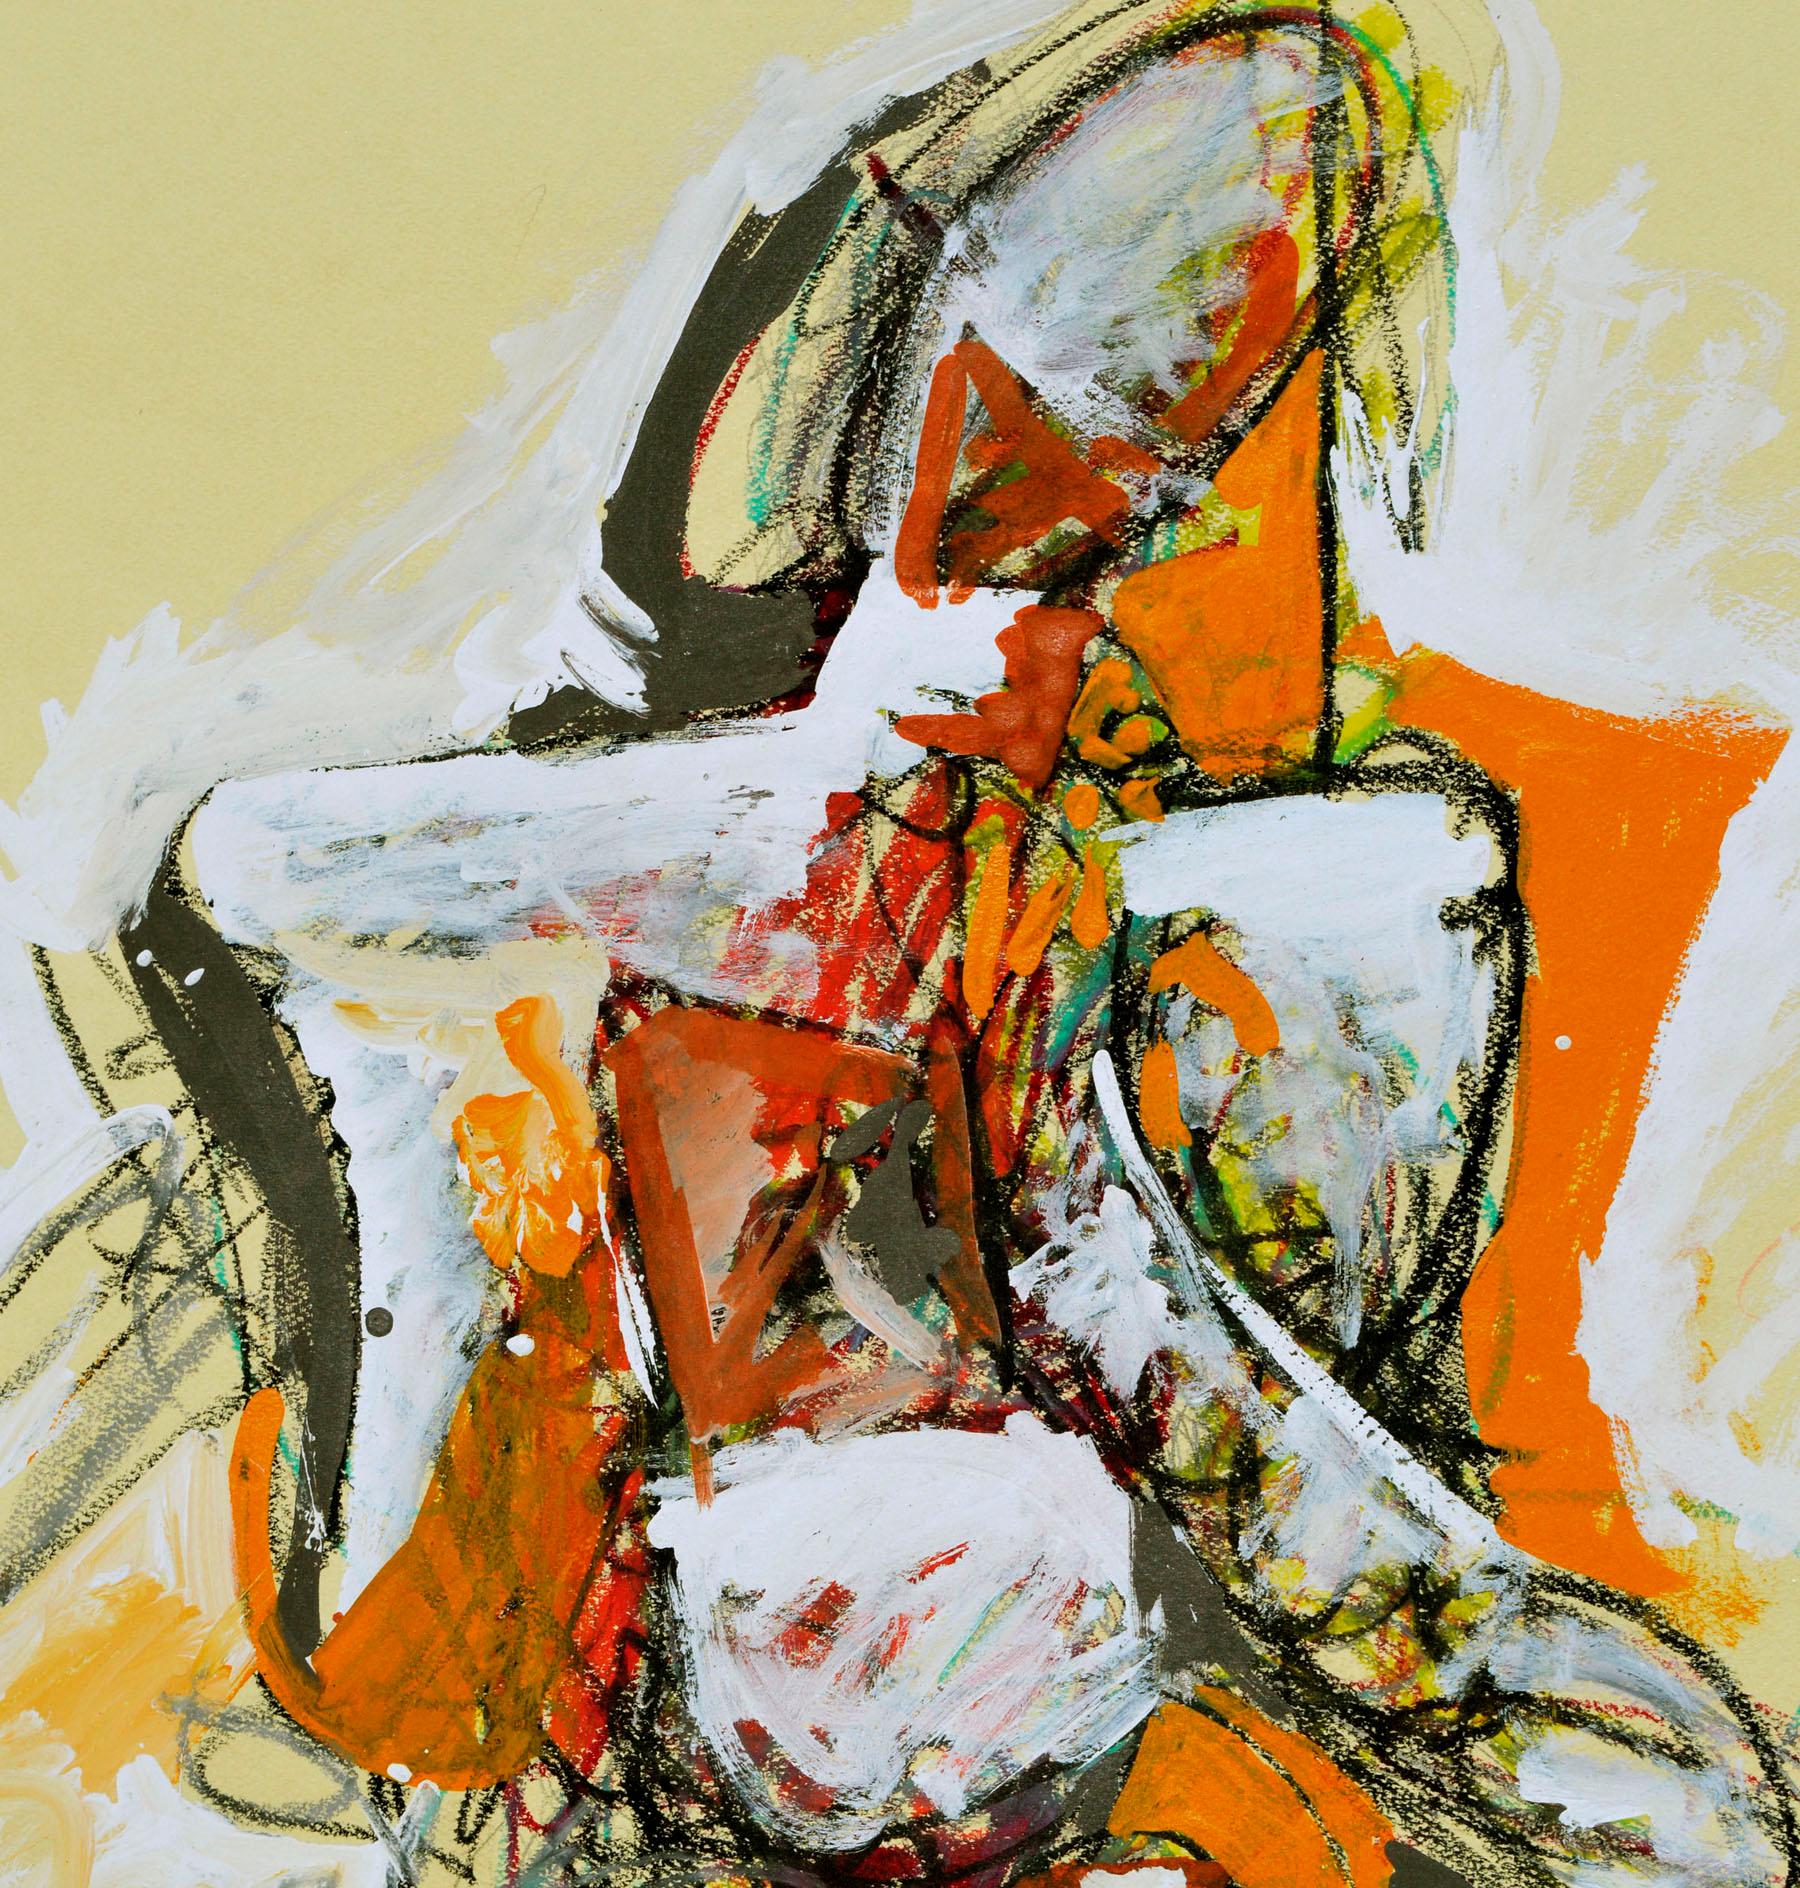 Abstrakt-expressionistische Figur  – Painting von Michael William Eggleston